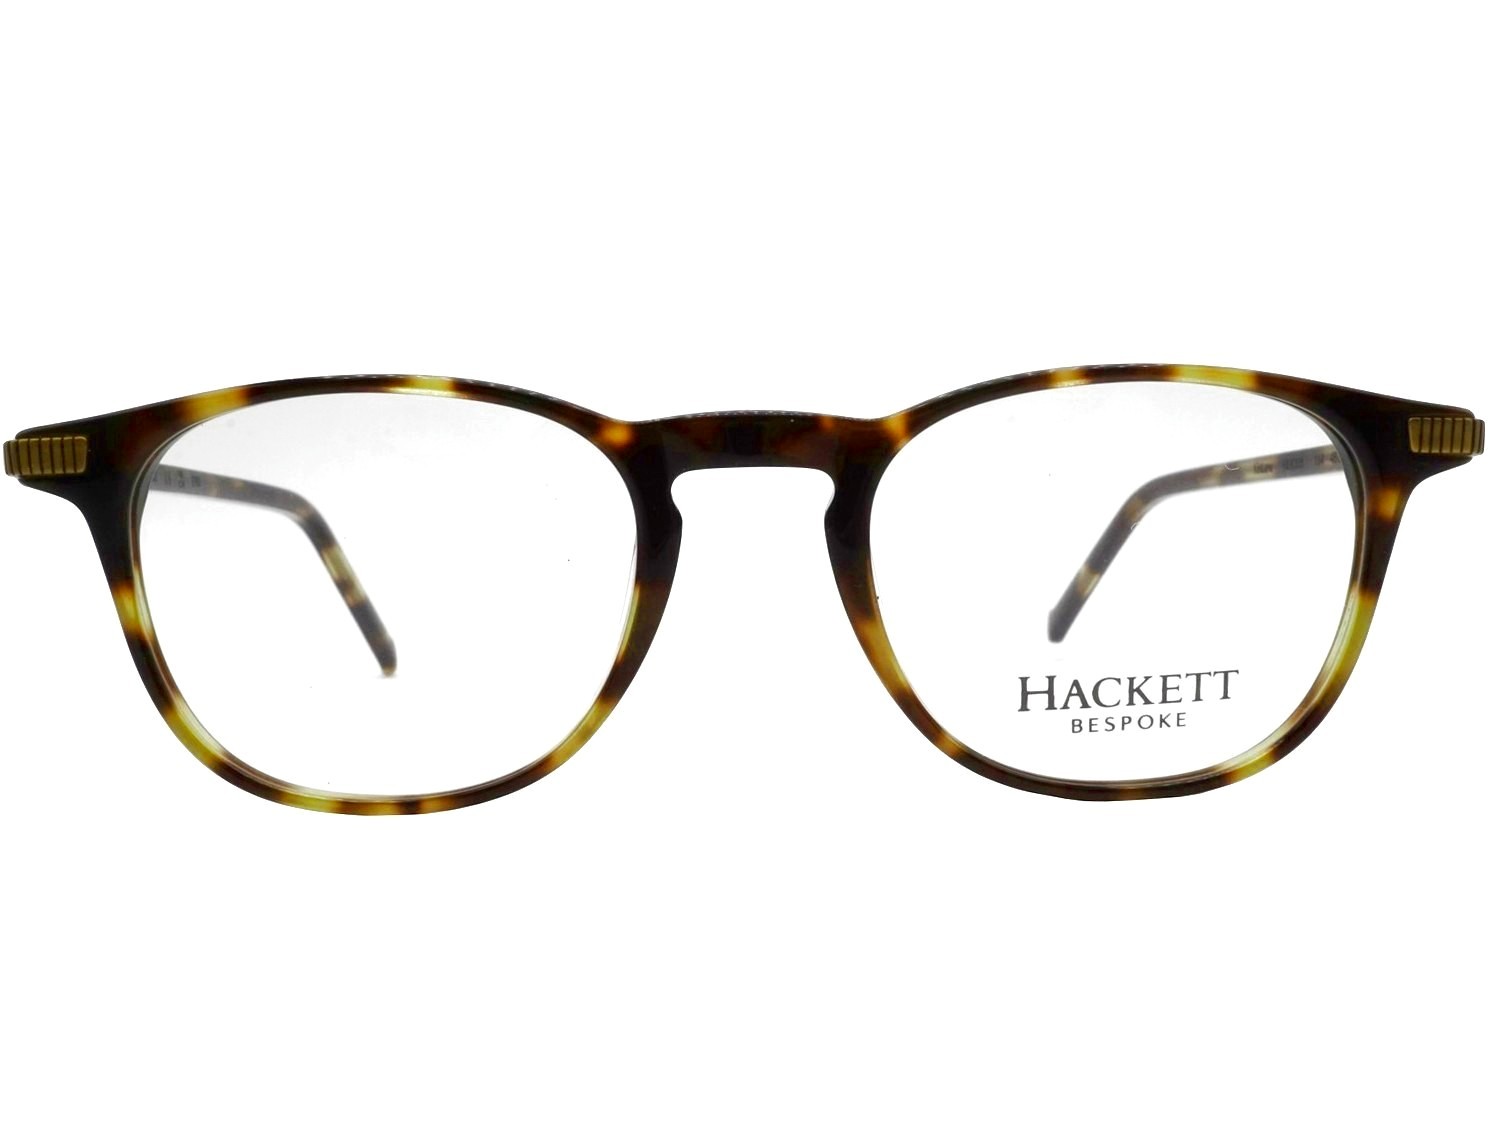 Hackett 335 134 bespoke